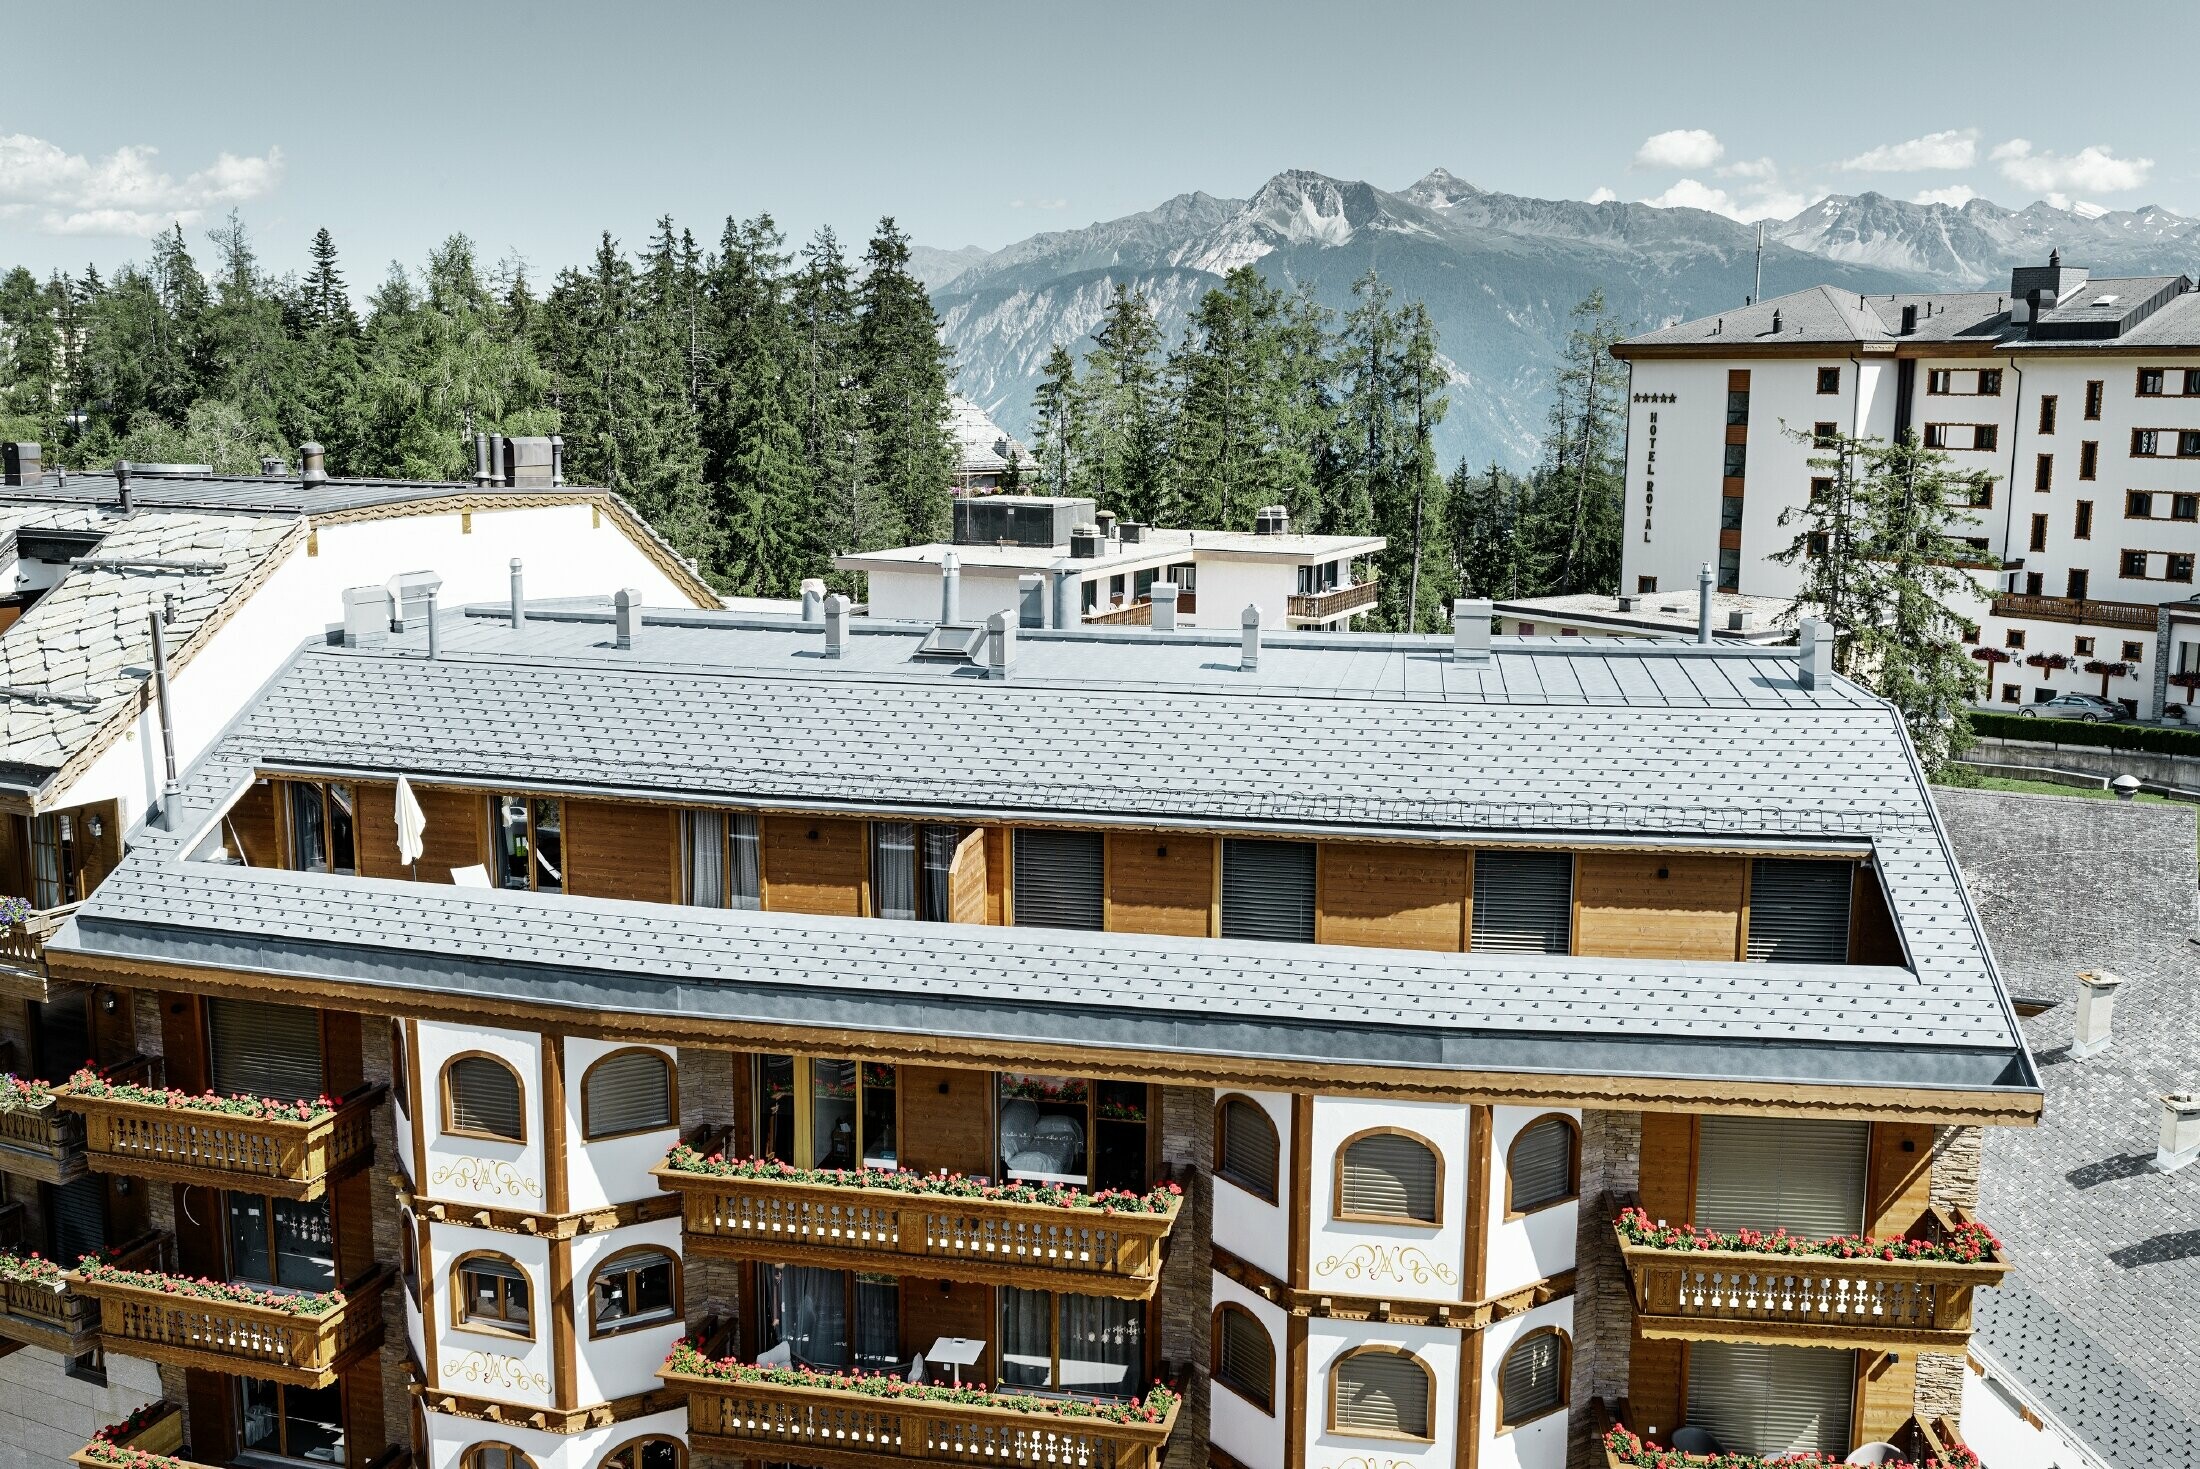 Immeuble d’habitation de Crans-Montana (Suisse) avec les Alpes en arrière-plan — Façade intégrant de nombreux éléments en bois et dont la toiture a été réalisée avec des bardeaux en aluminium PREFA de couleur gris pierre